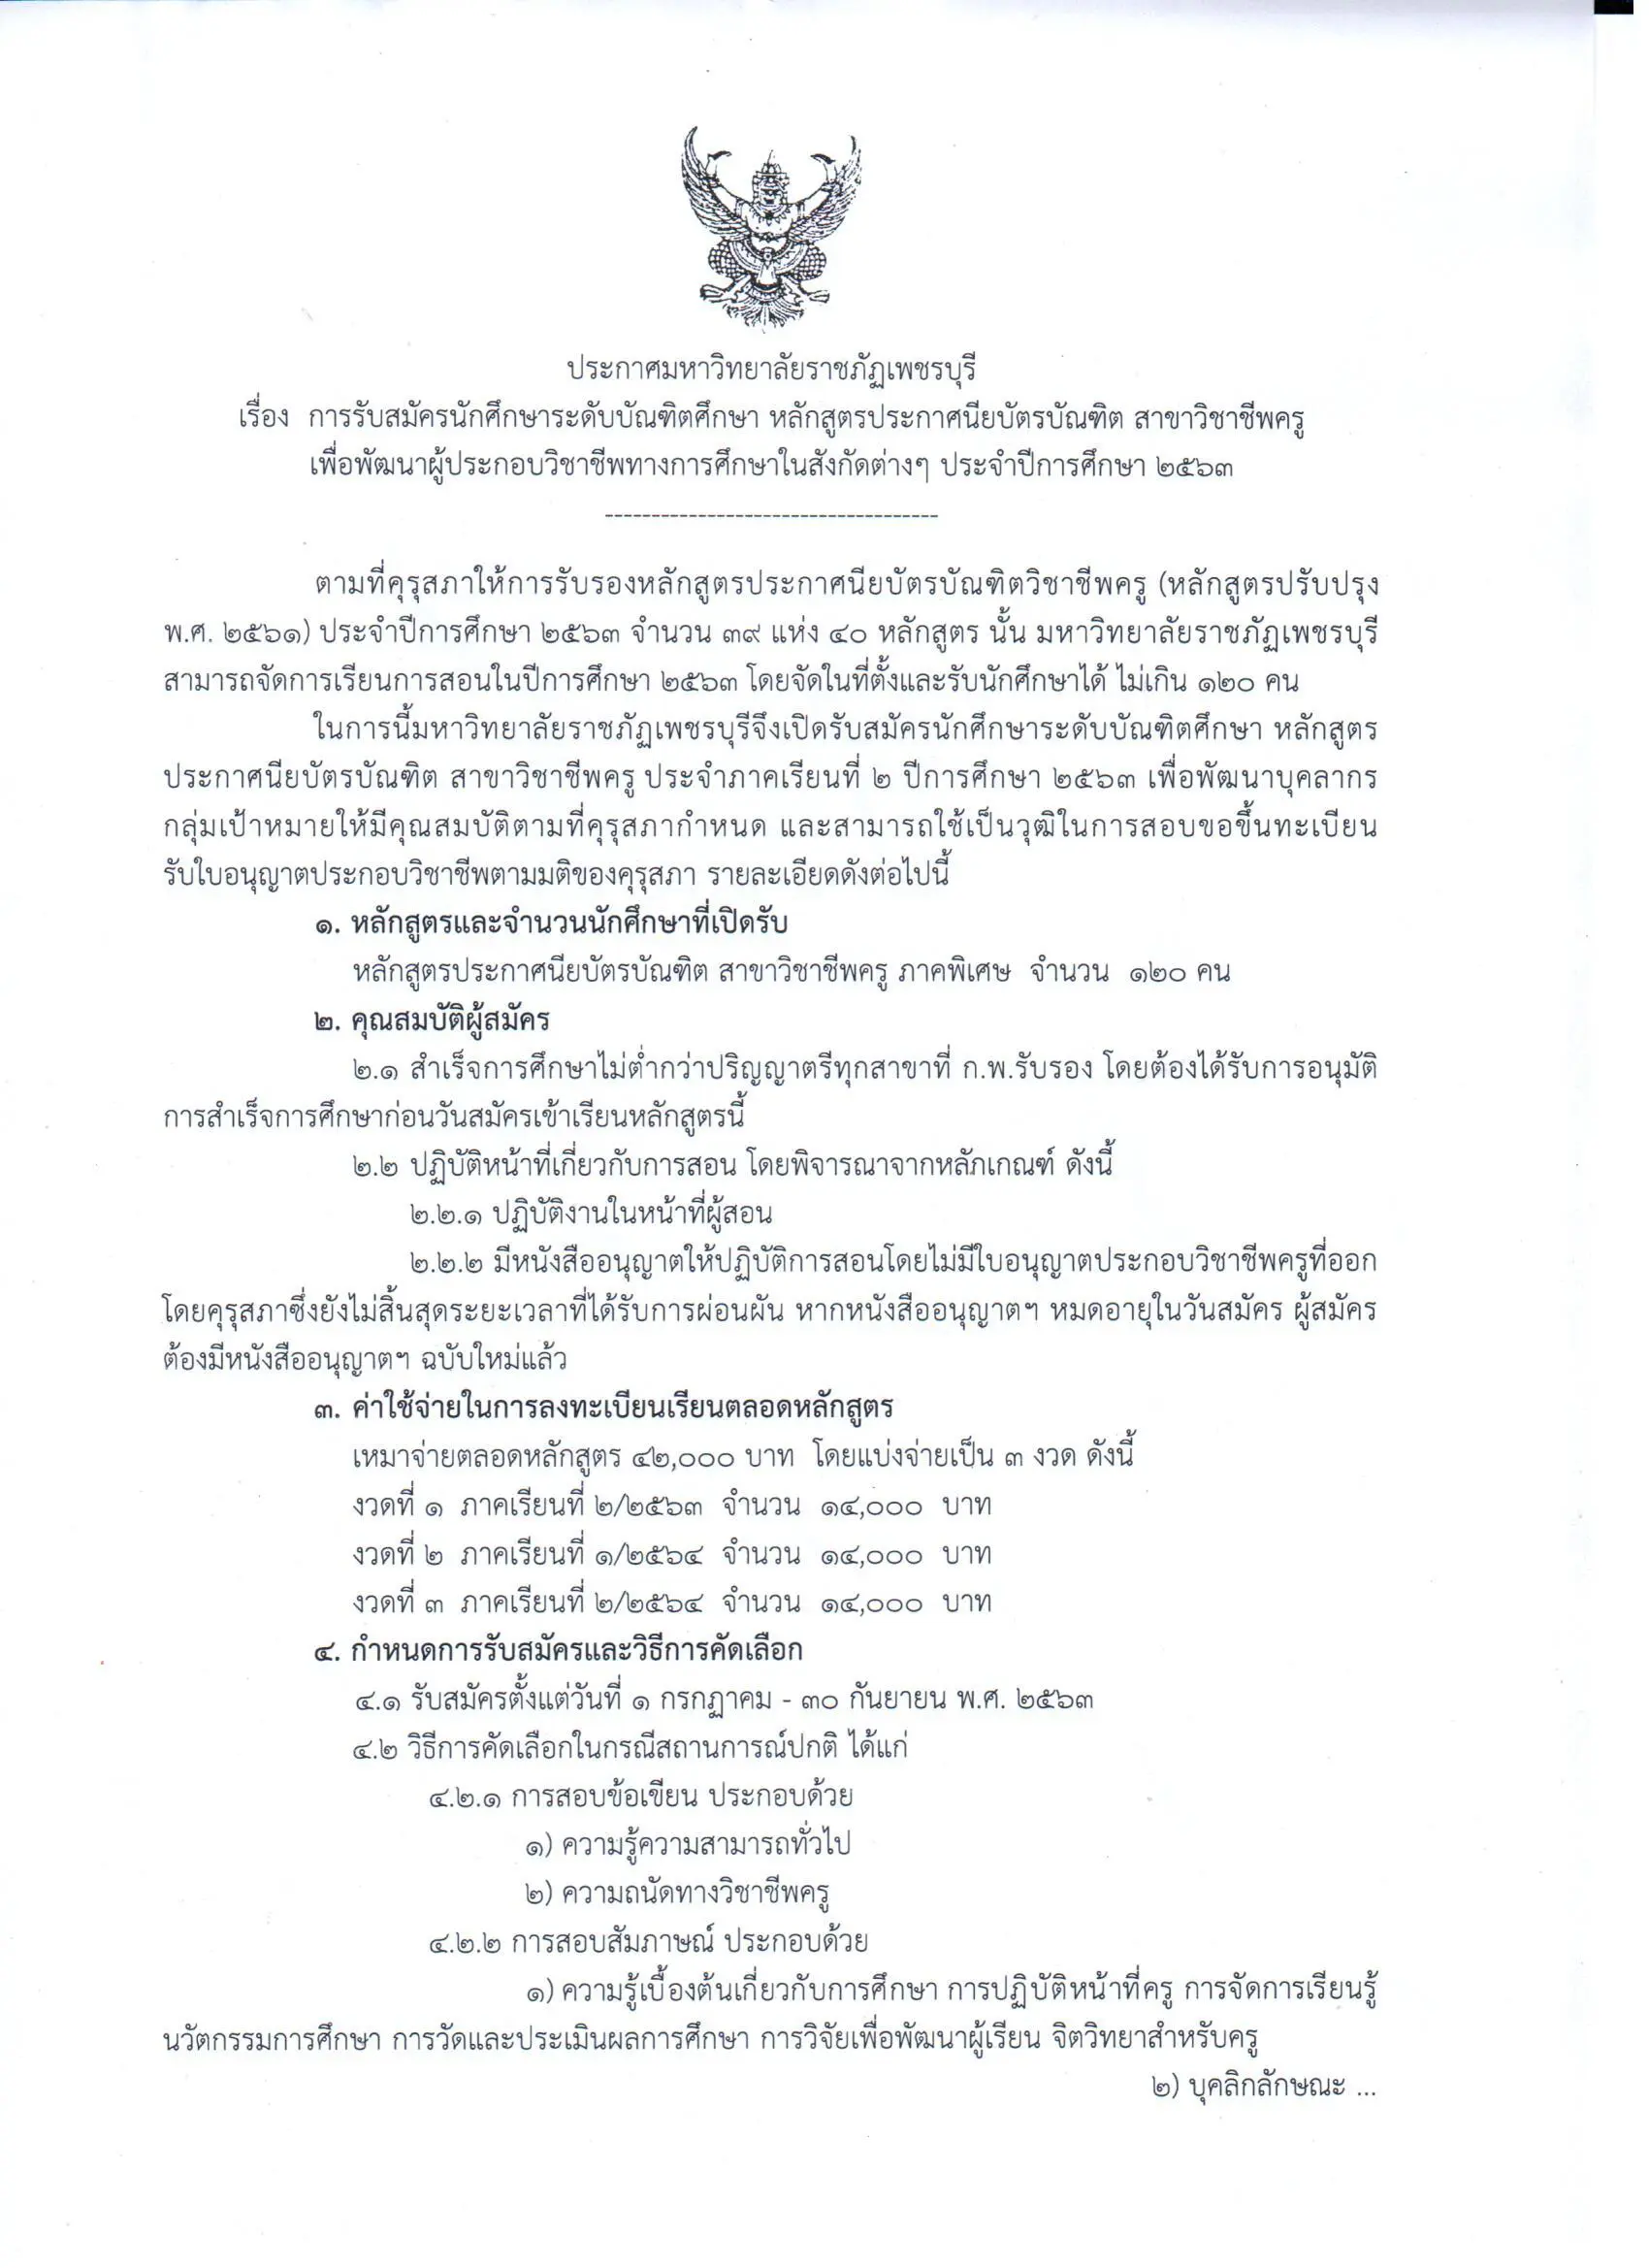 มหาวิทยาลัยราชภัฏเพชรบุรี เปิดรับสมัคร หลักสูตร ป. บัณฑิตวิชาชีพครู 1 ก.ค. - 30 ก.ย. 63